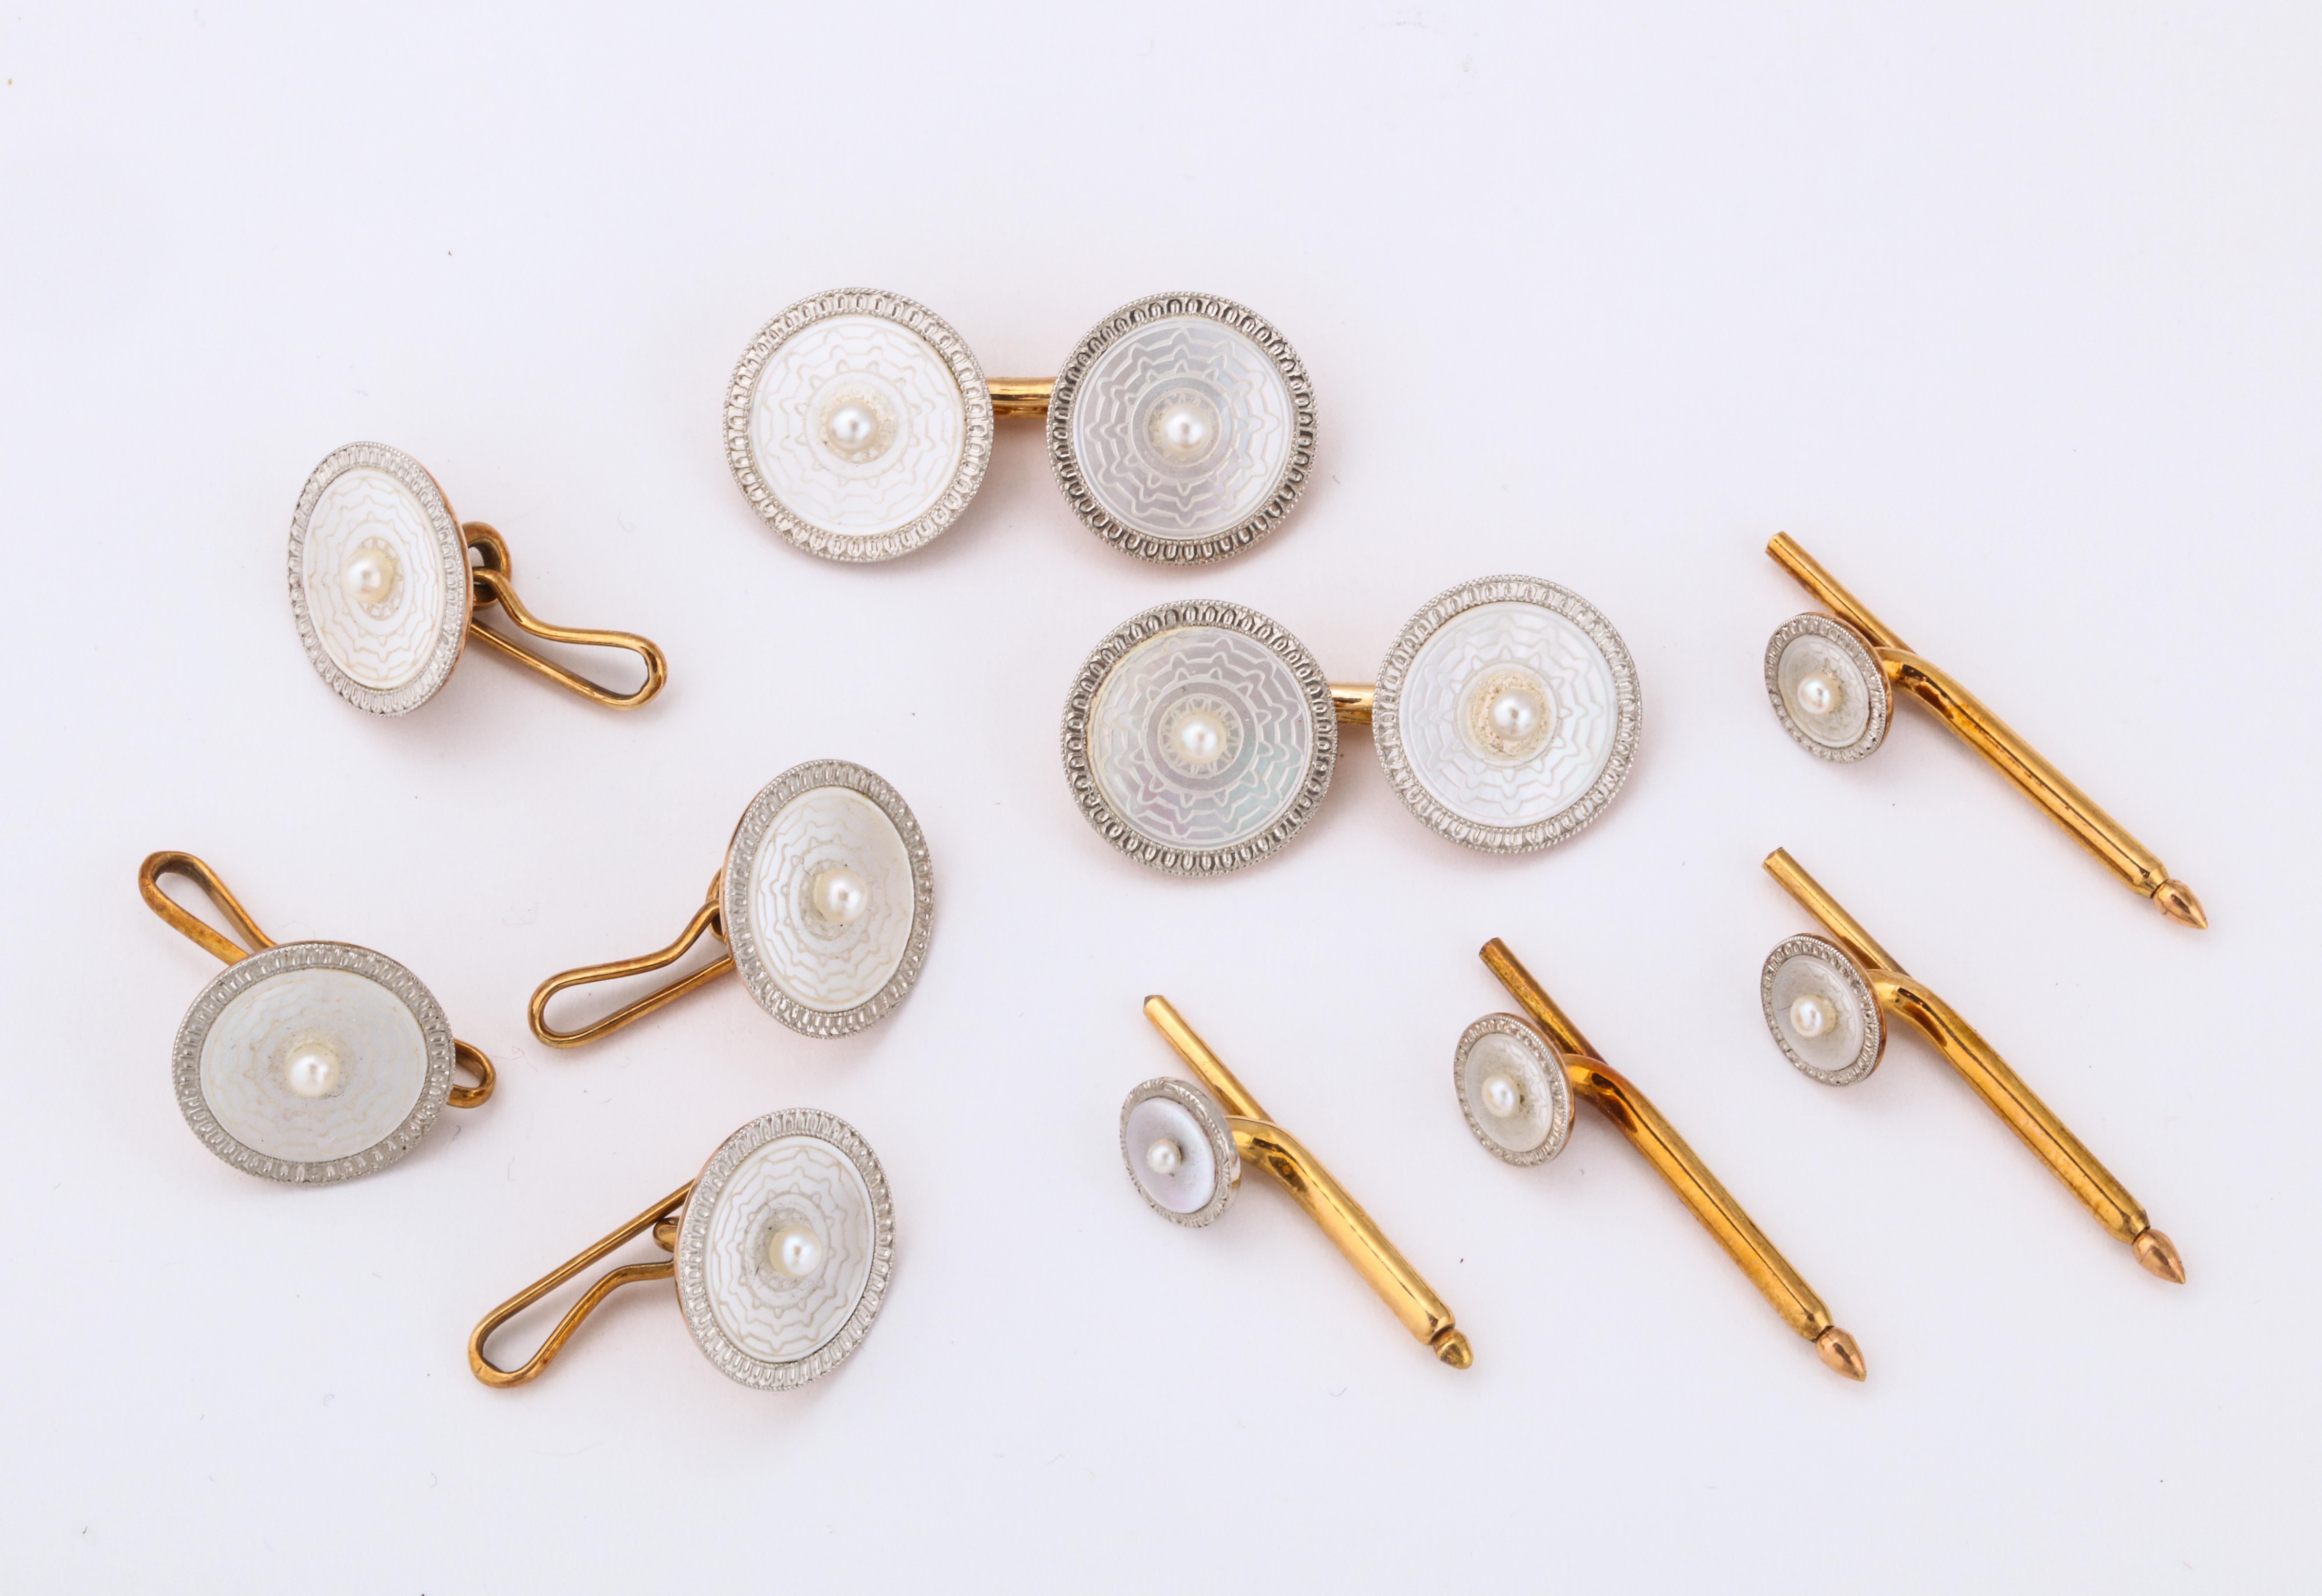 Boutons de manchette en nacre, perles de rocaille et diamants.

Serti d'or et de platine

Fabriqué vers 1920